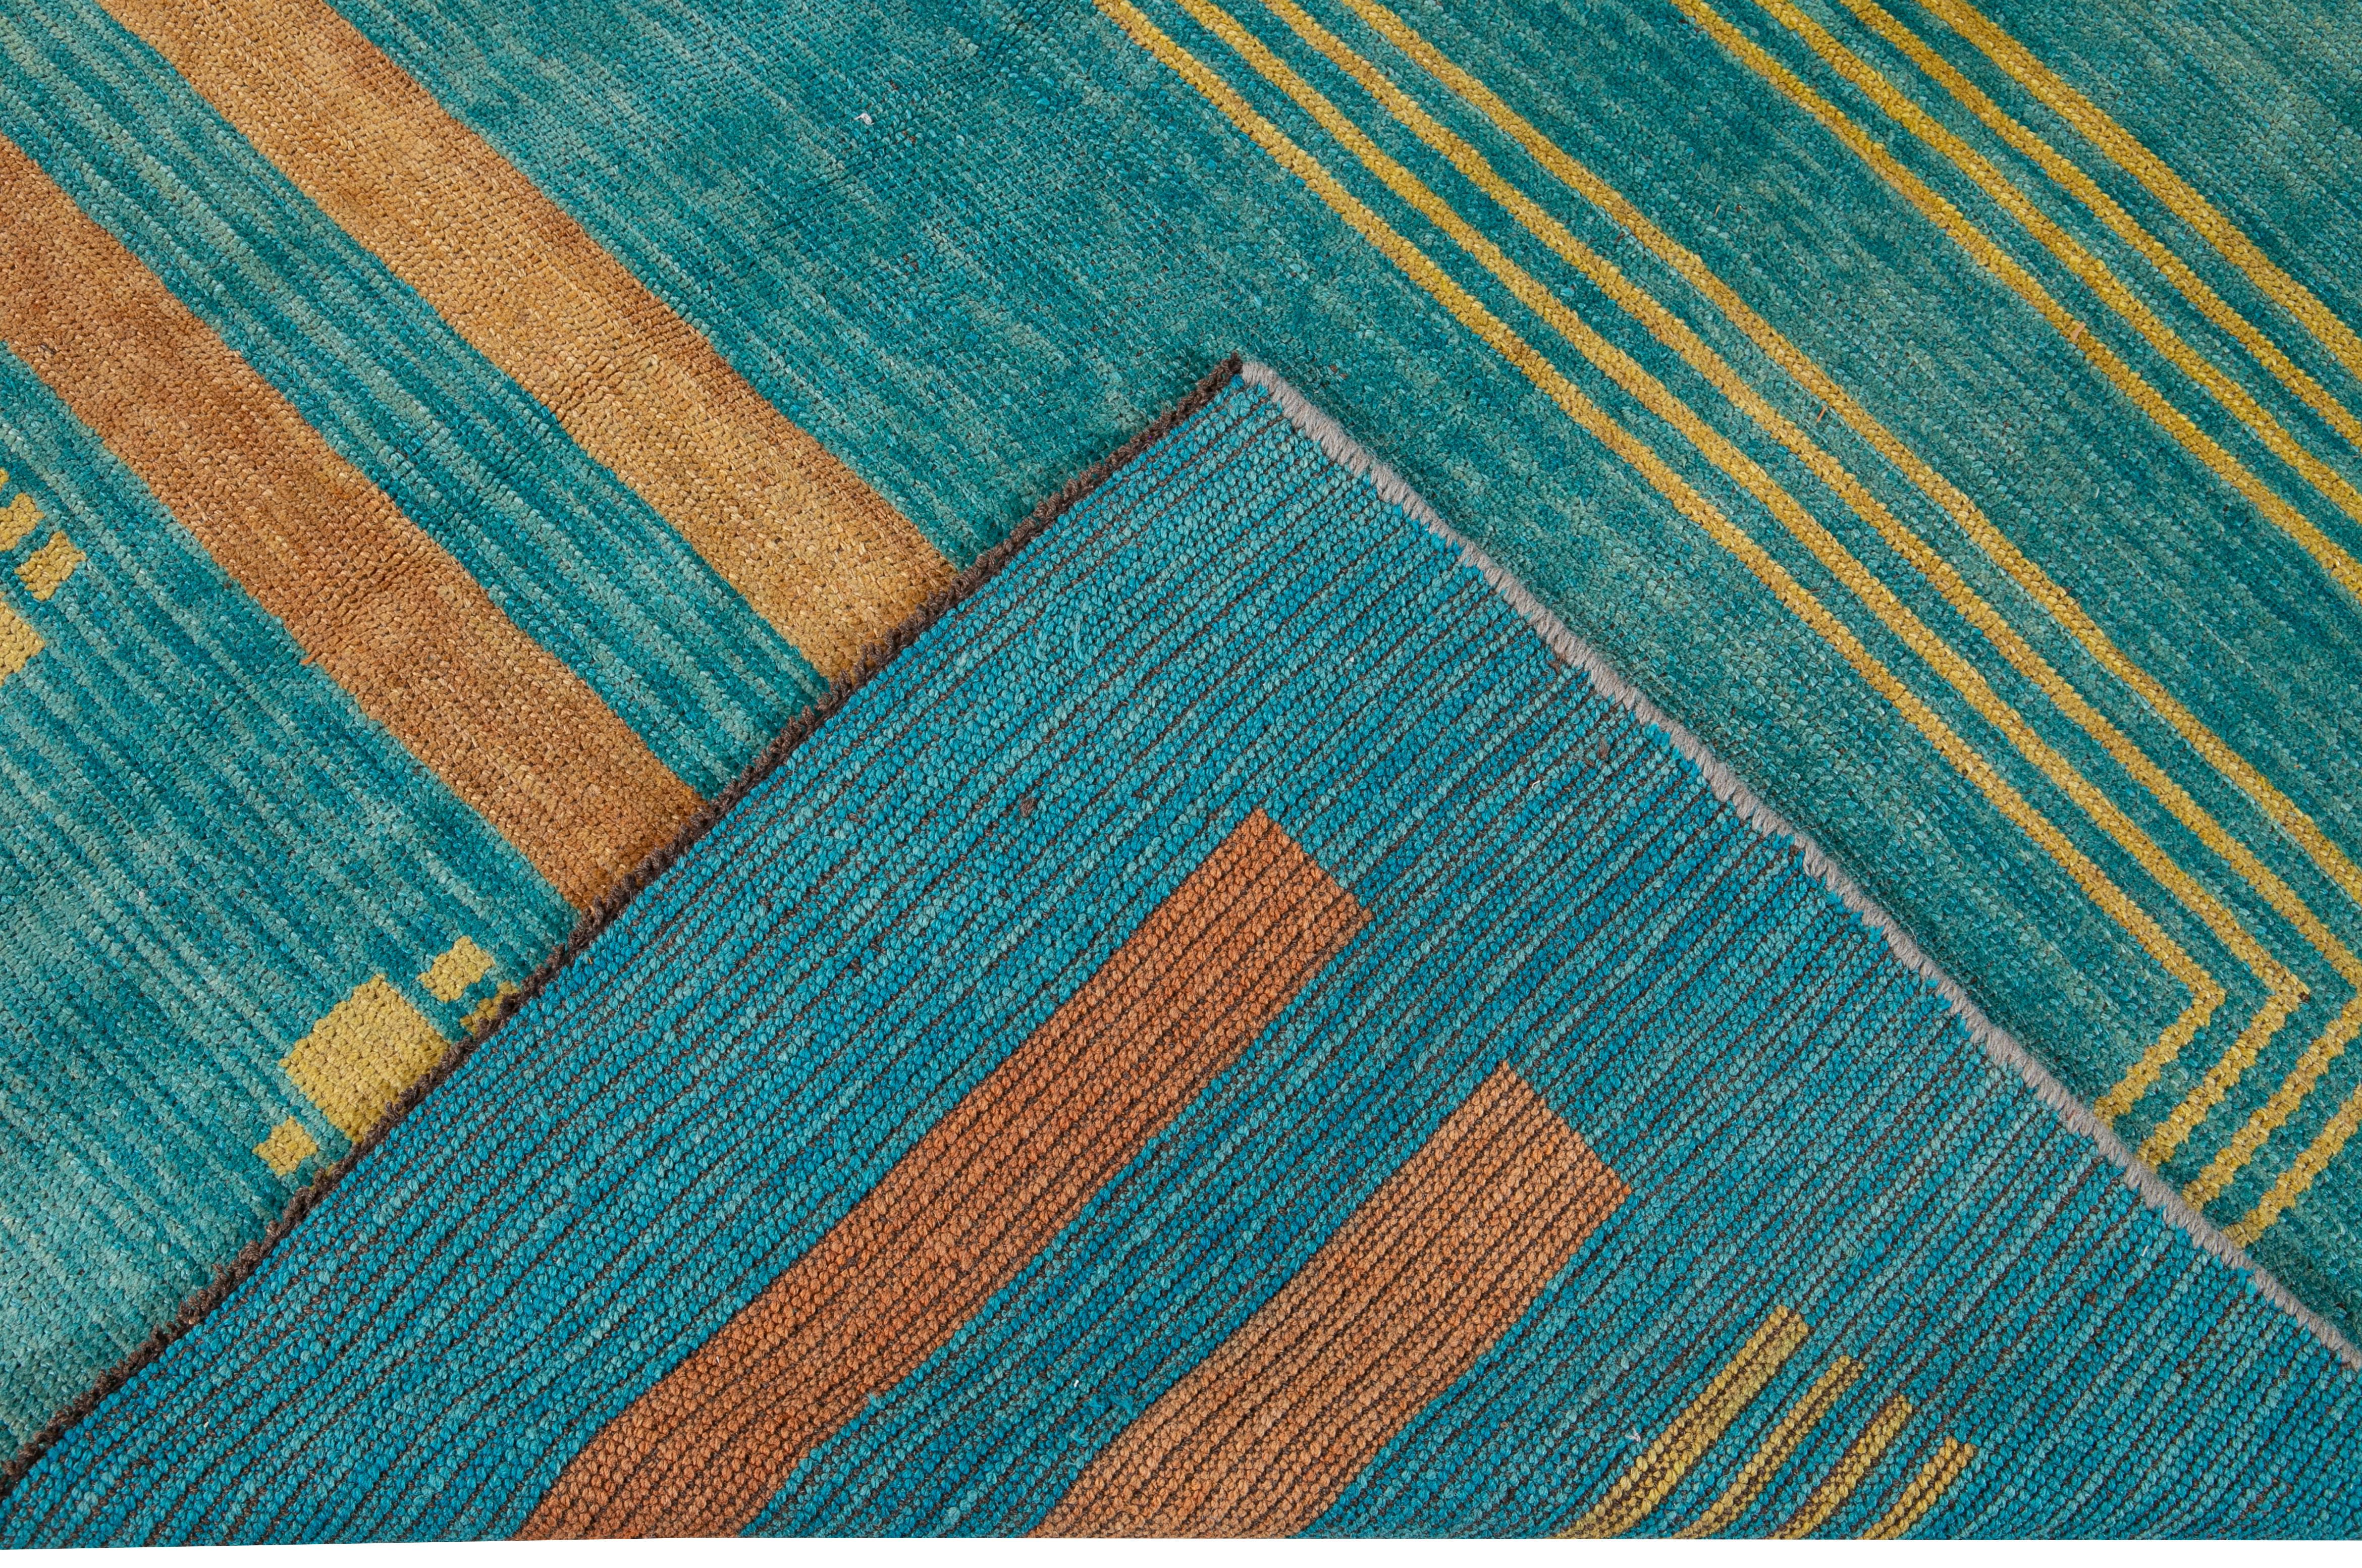 Magnifique tapis carré moderne en laine nouée à la main, de style déco, avec un champ sarcelle. Ce tapis contemporain présente des accents de jaune et d'orange dans un magnifique motif géométrique.

Ce tapis mesure : 6'9